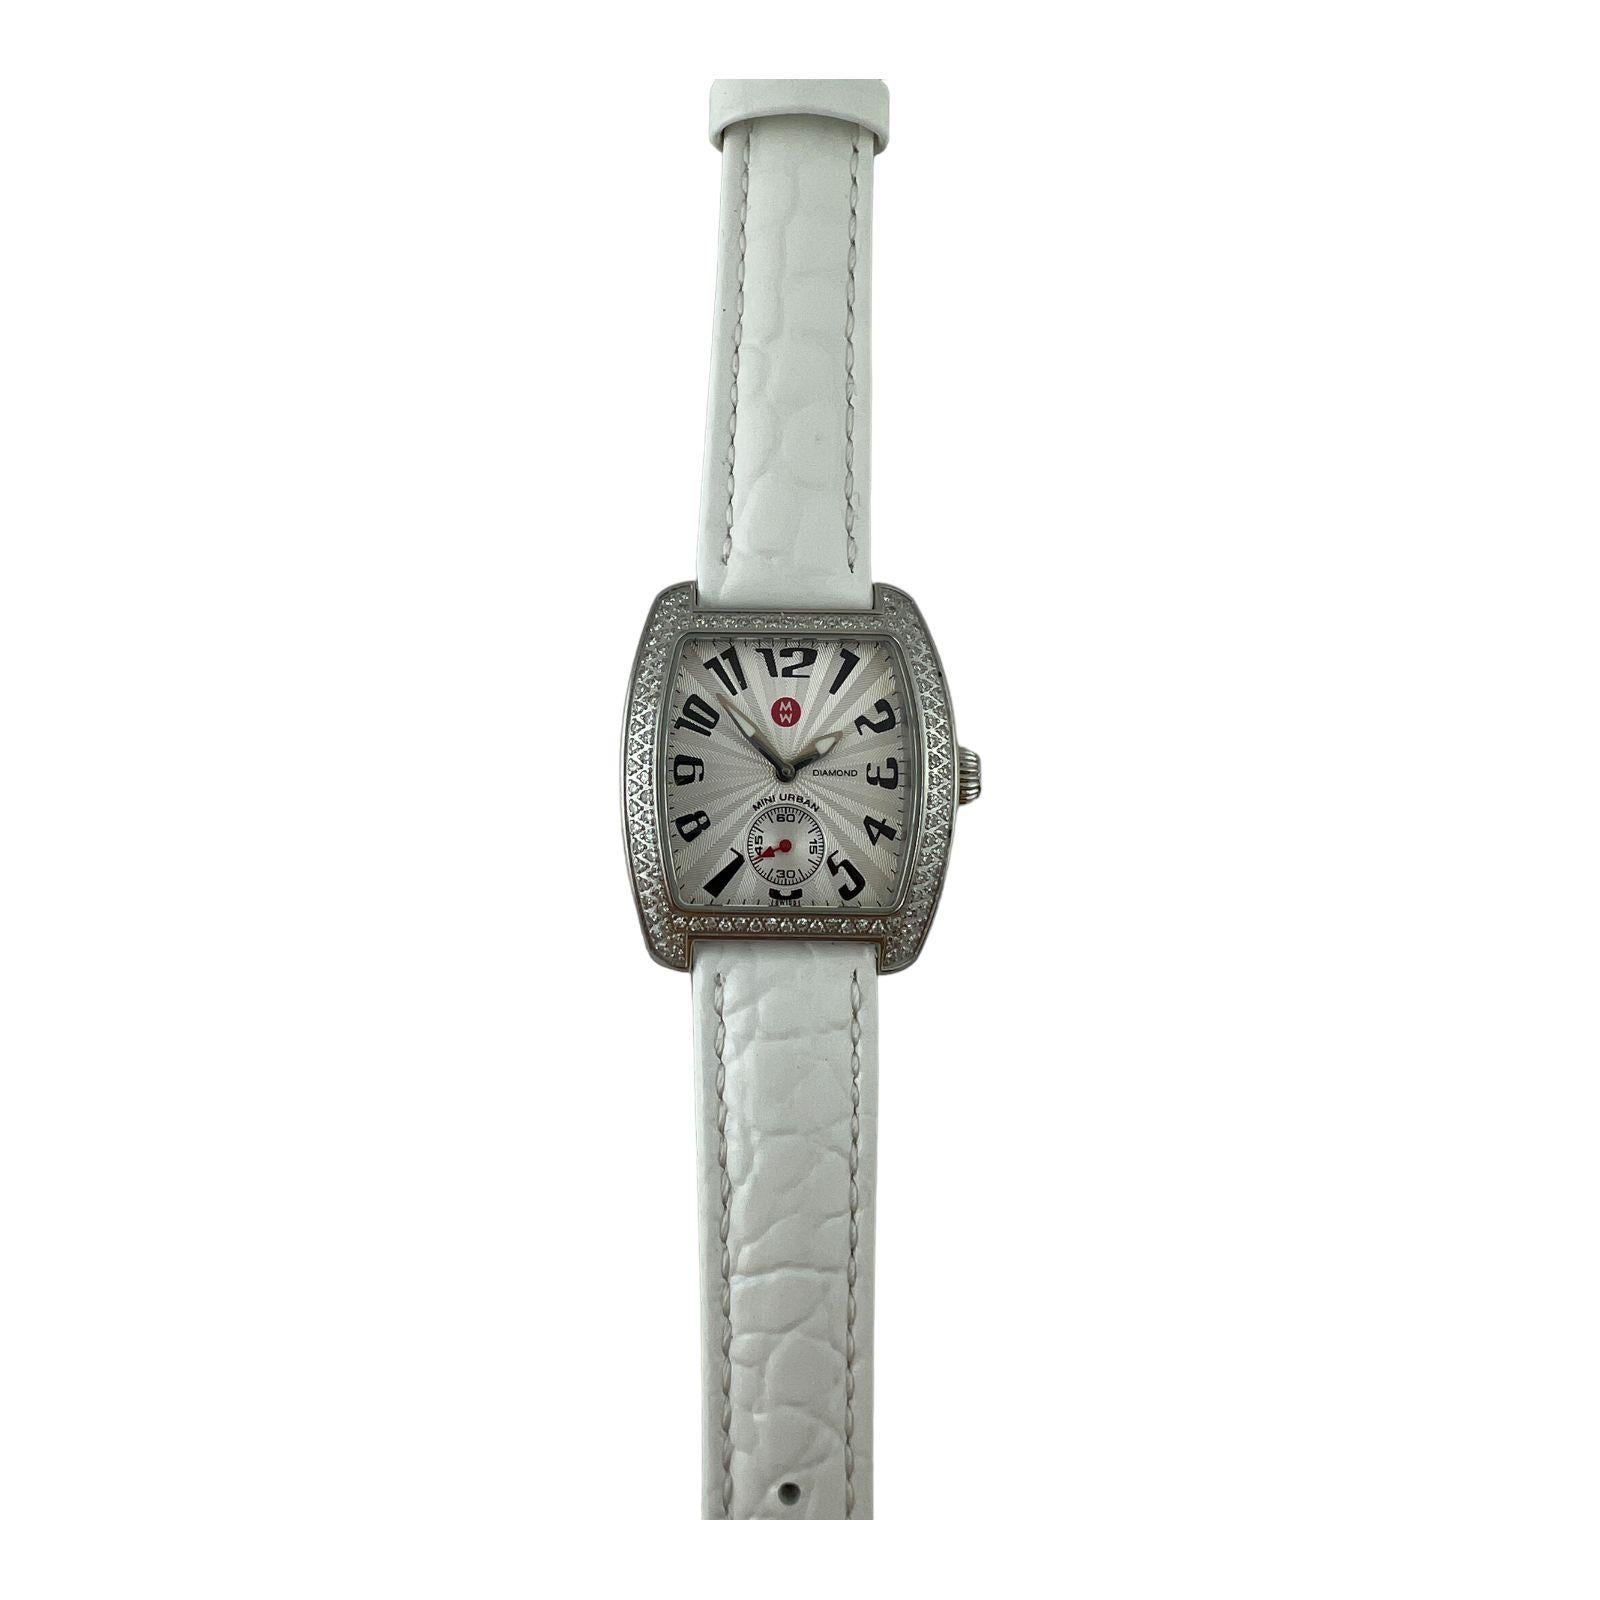 Michele Mini Urban Diamond Damenuhr

Modell: MW02A01A2001
Seriennummer: N26803SS

Diese diamantene Michele Uhr ist aus Edelstahl mit einer diamantenen Lünette und einem weißen Lederarmband gefertigt.

Diese Uhr ist ca. 8,25